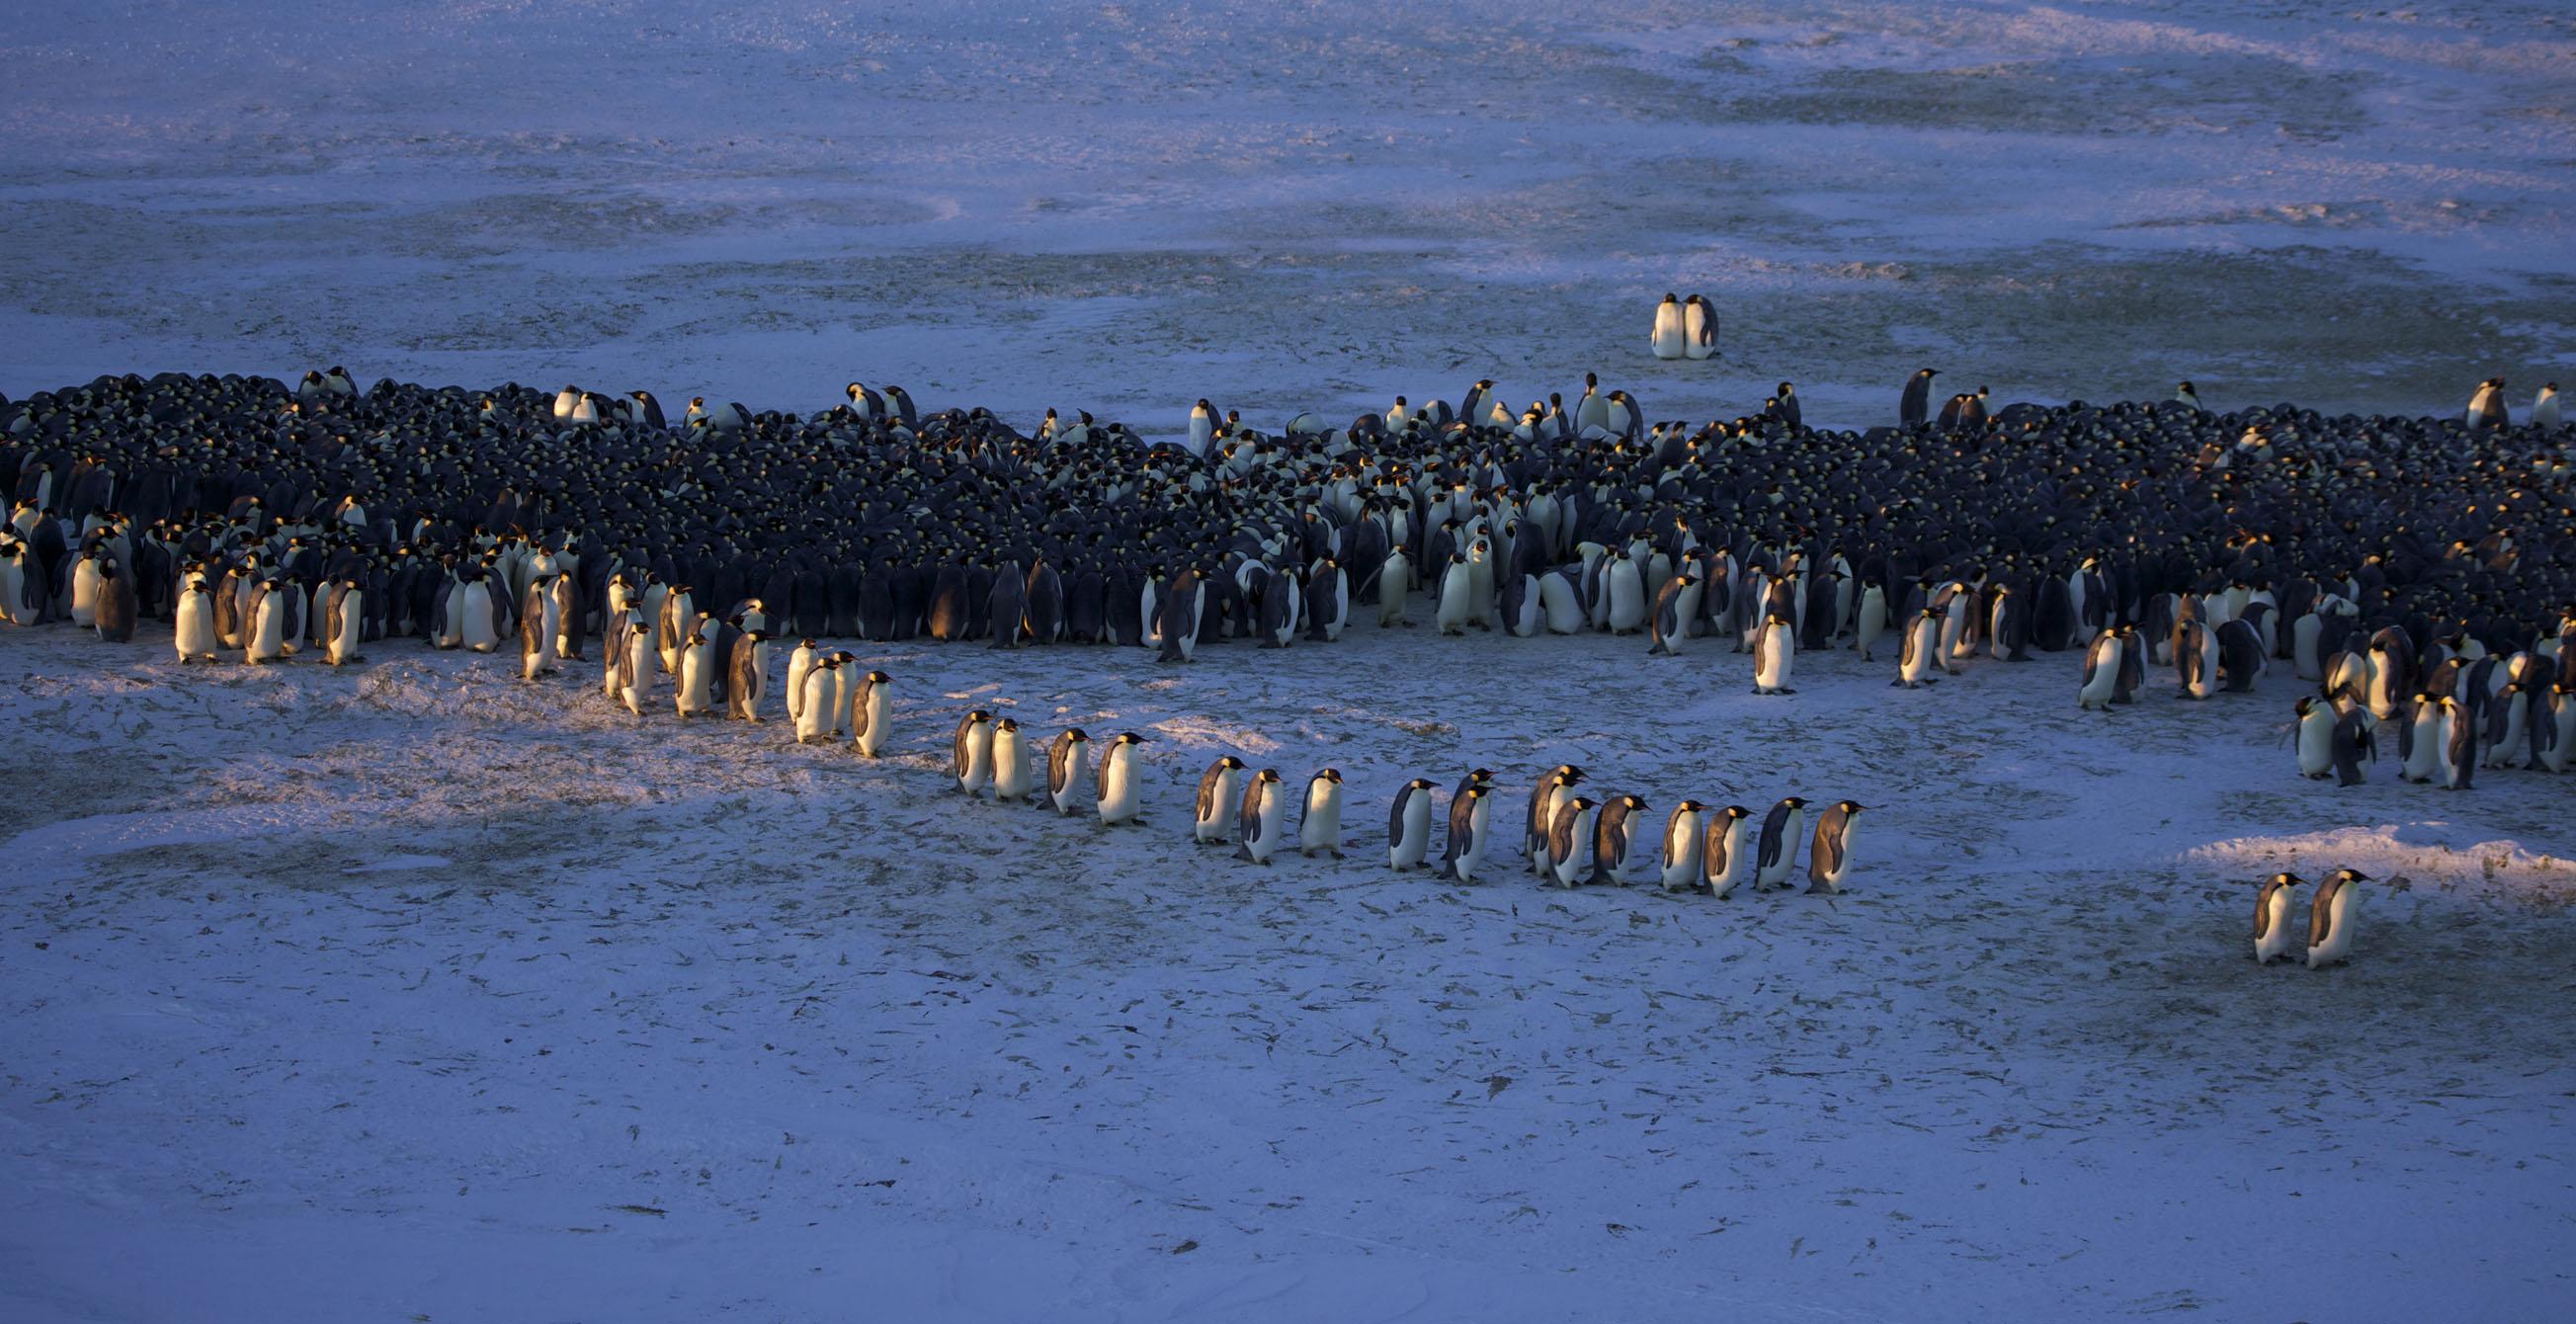 企鹅抱团取暖图片图片